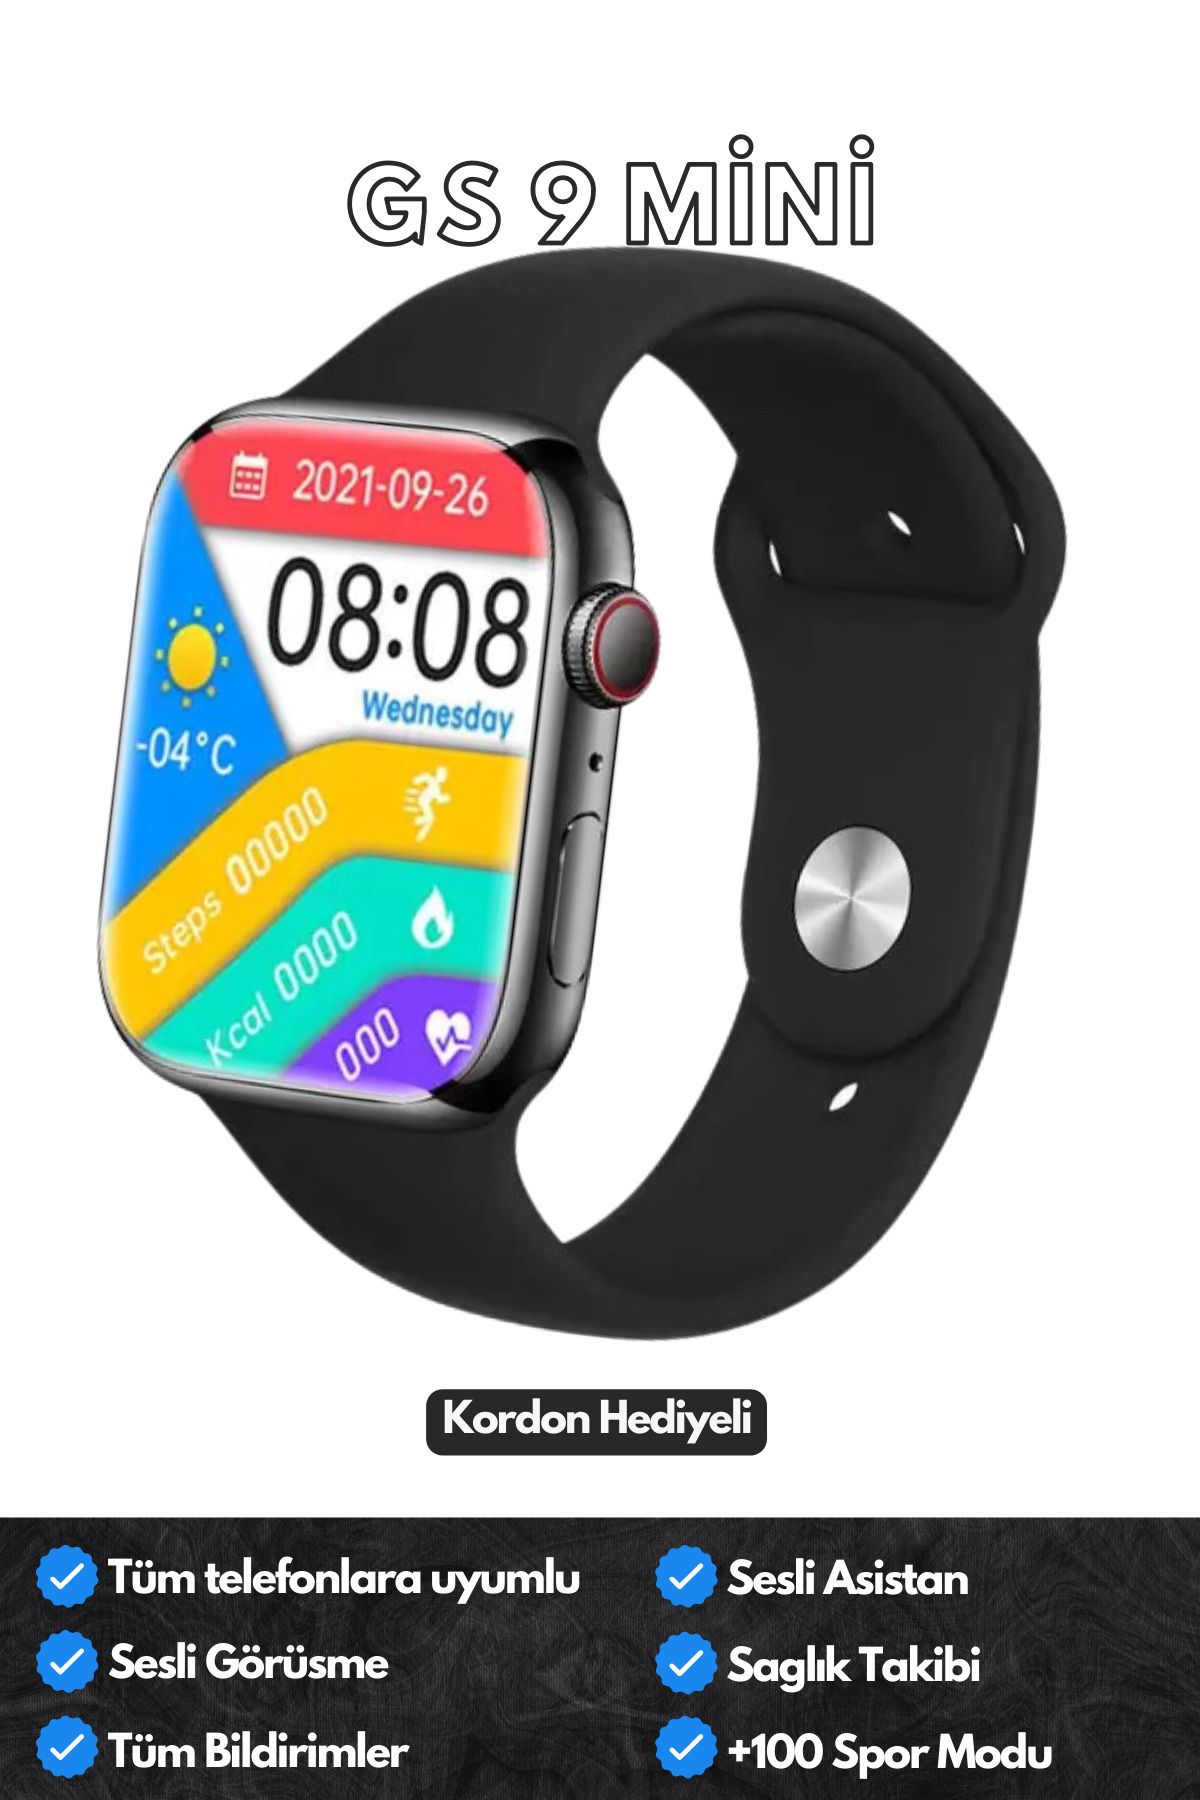 Favors Watch 9 Mini Gs9 41 Mm Akıllı Saat Iphone Ve Android Tüm Telefonlara Uyumlu Bildirim/Sesli Görüşme